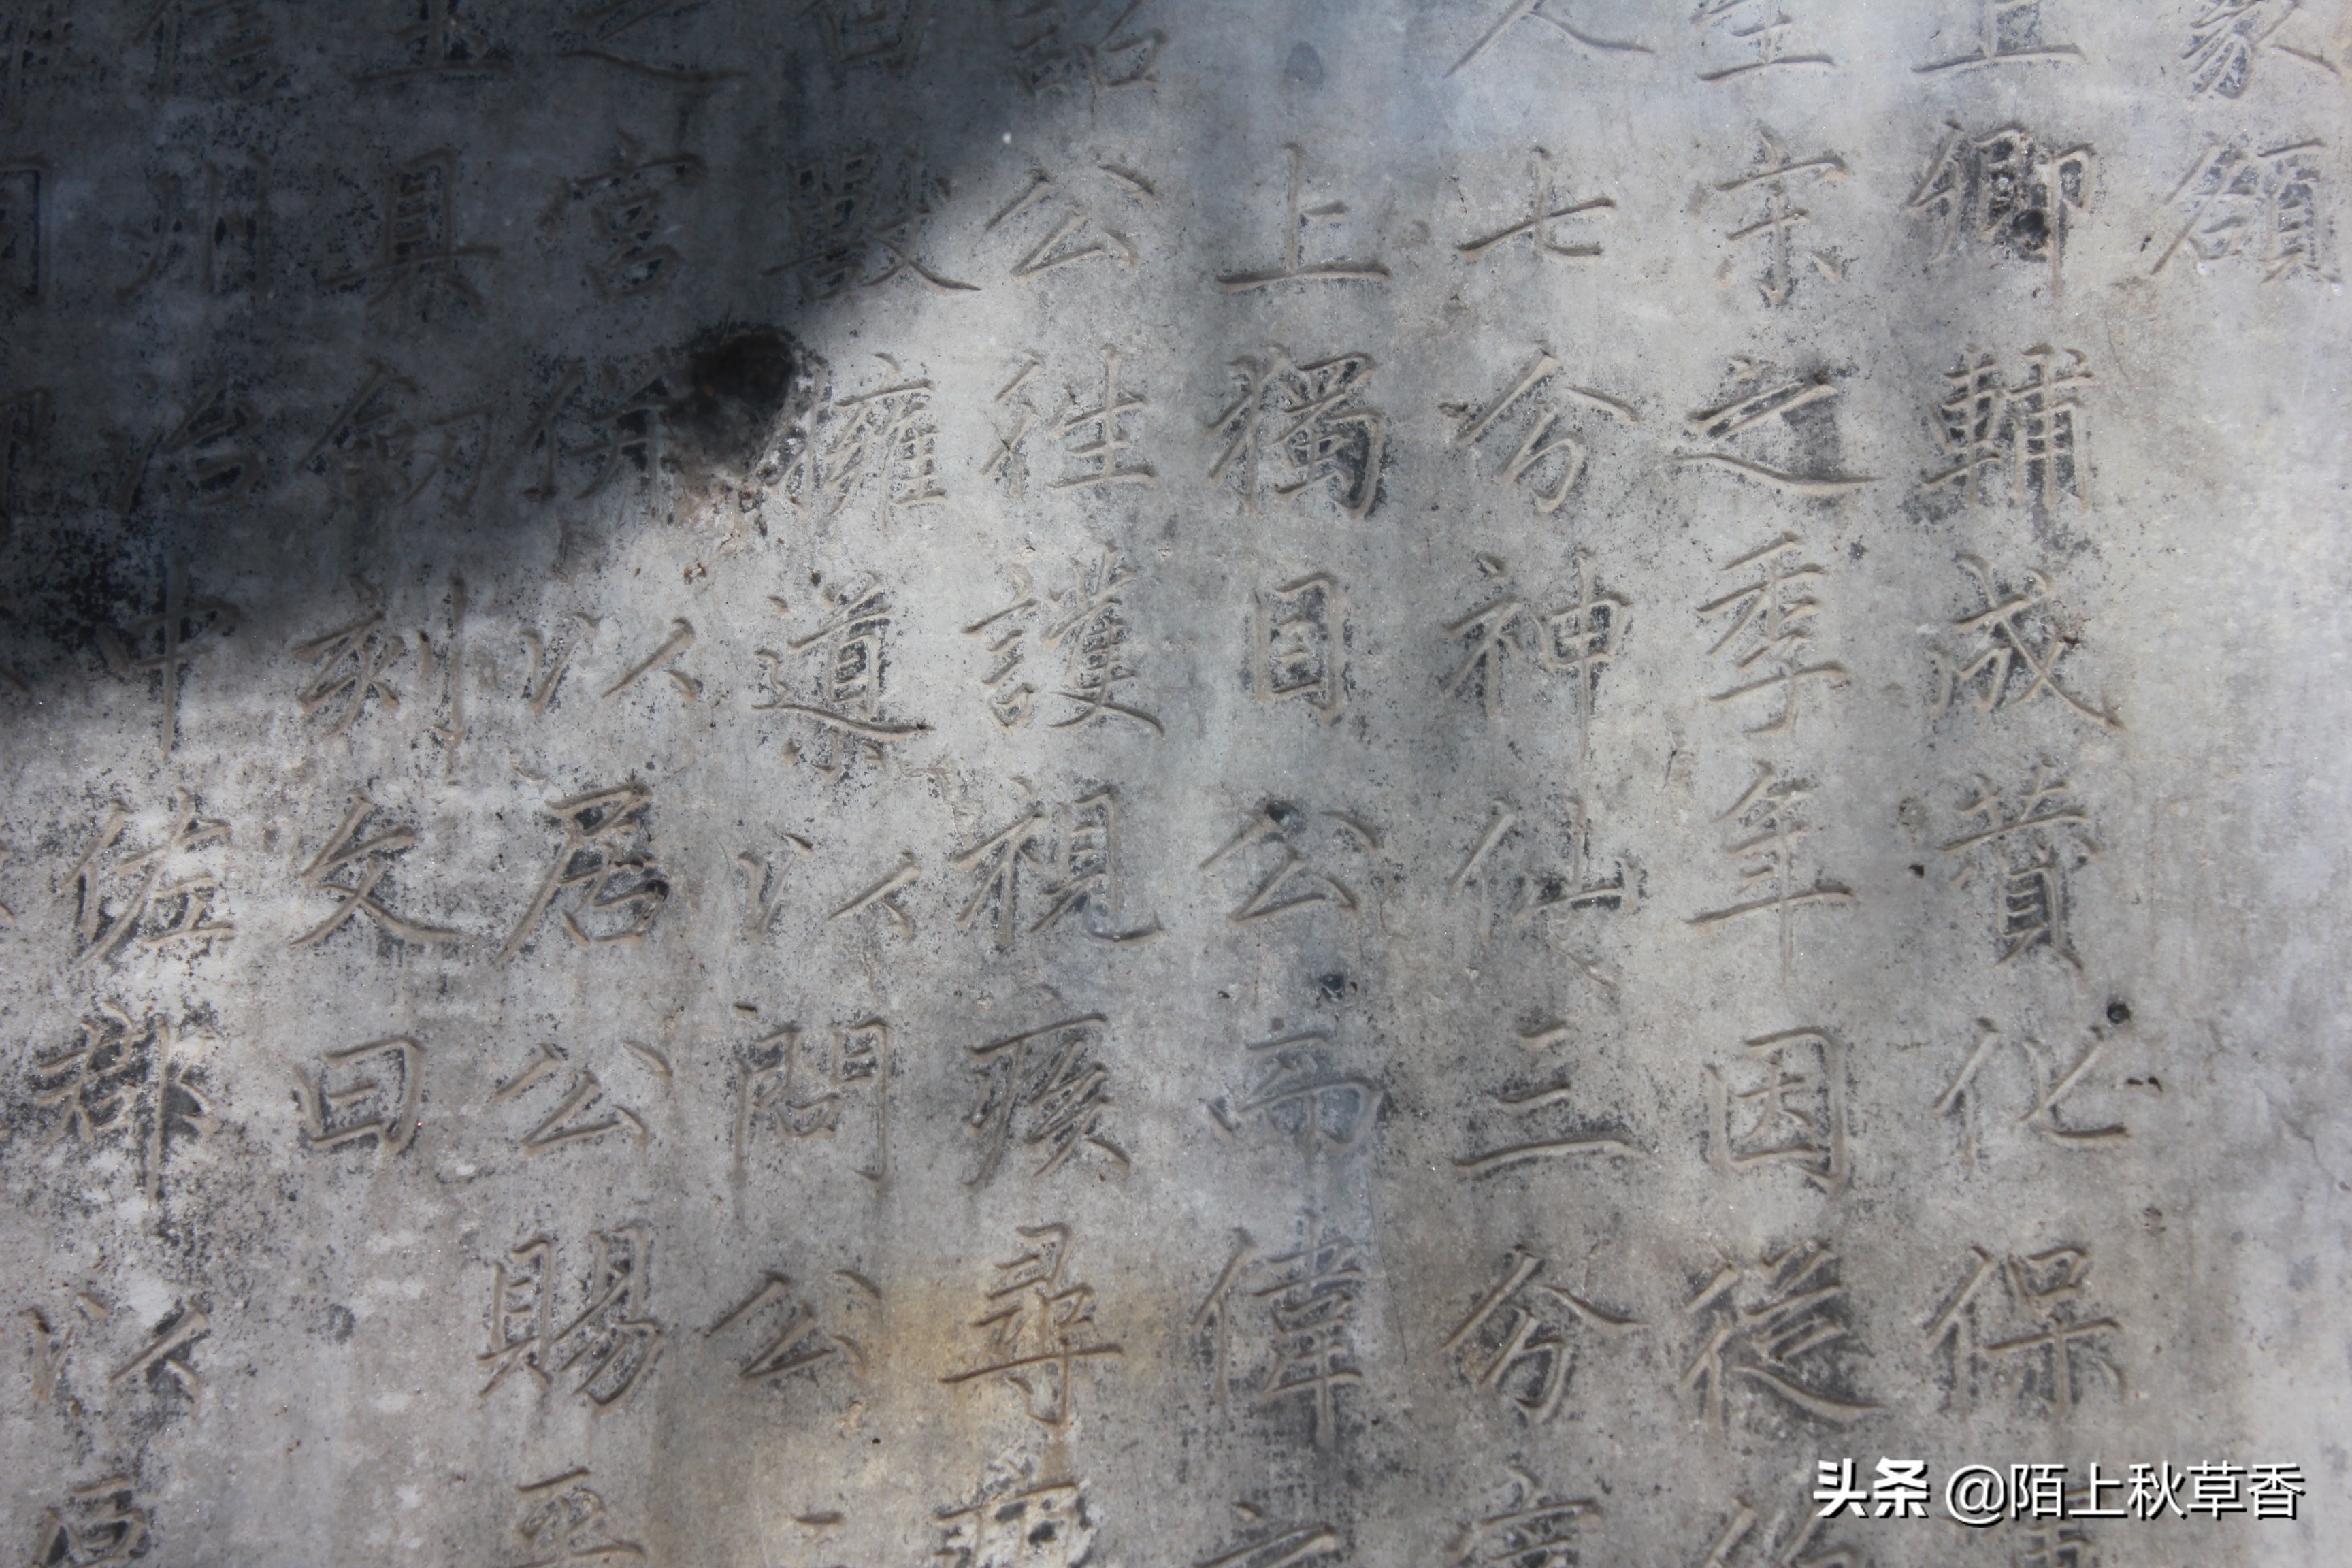 北京东岳庙，如此低调的景点，你是不是错过了？